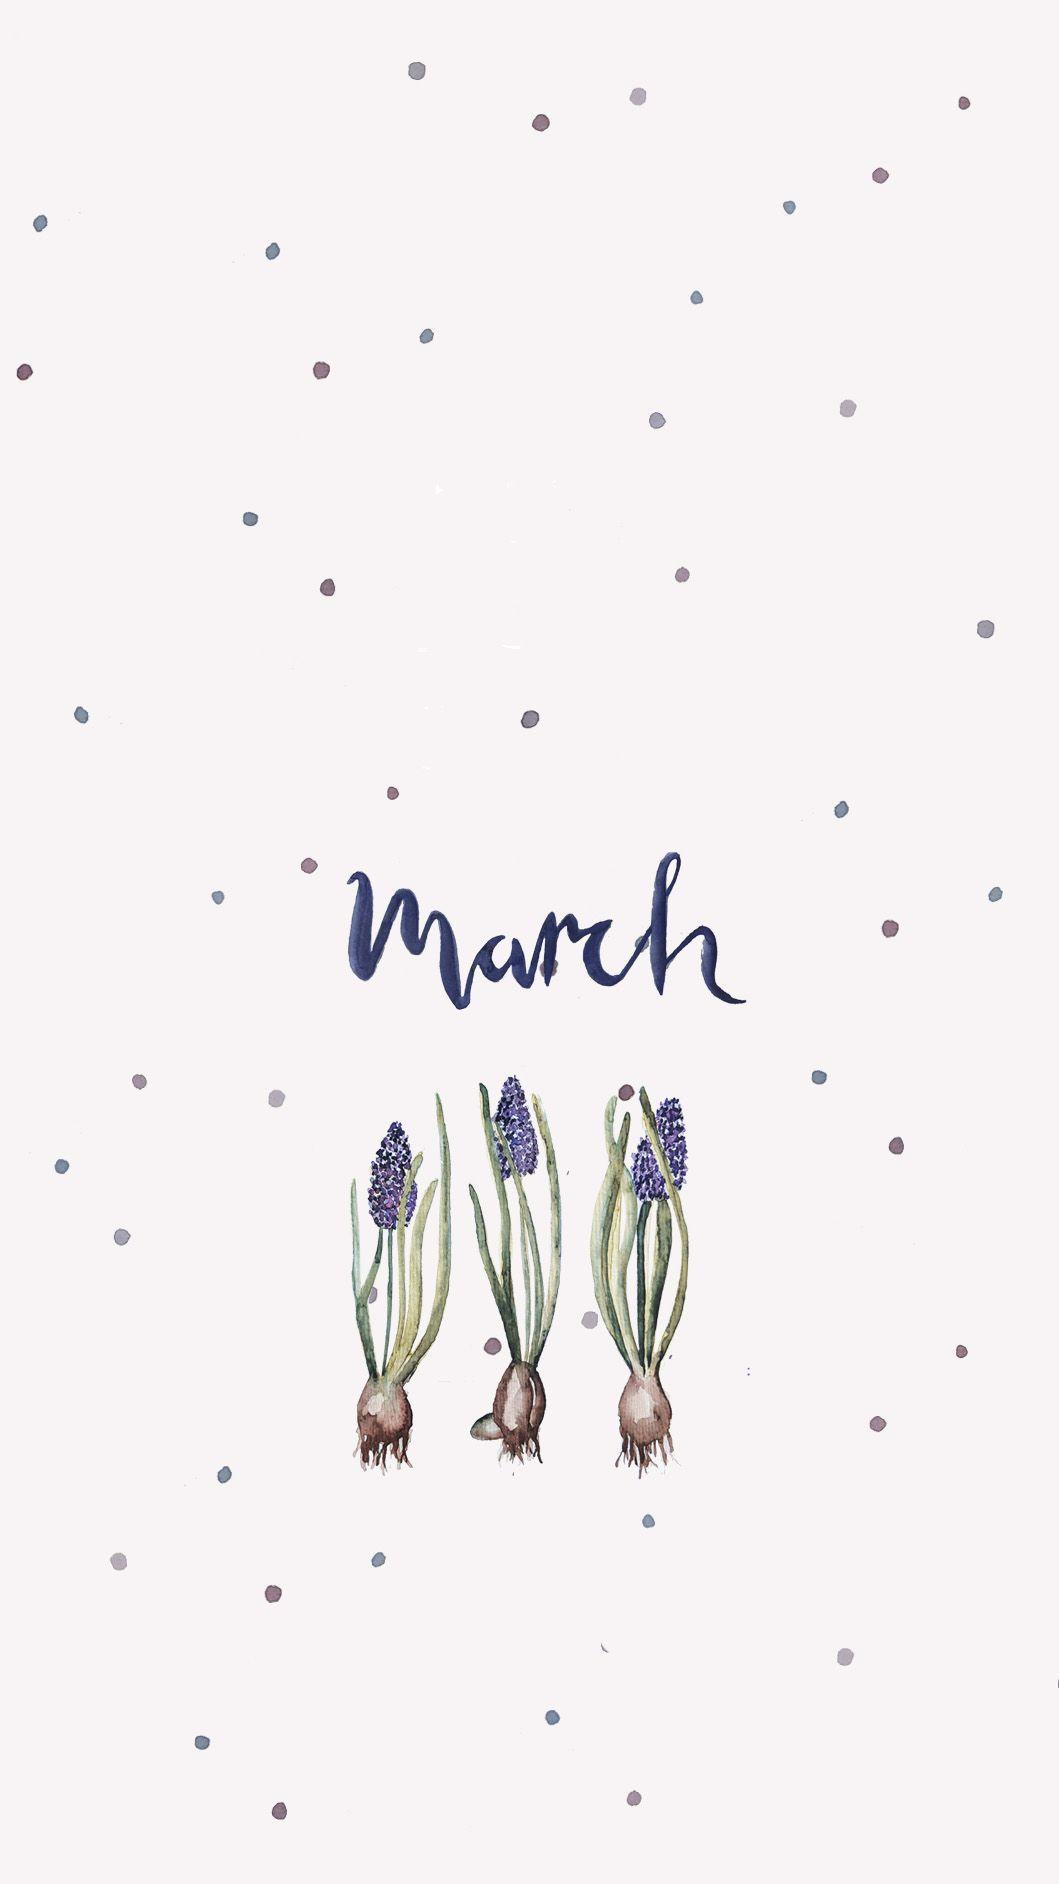 Từ những tông màu pastel đến những họa tiết chấm bi, hình nền dễ thương tháng 3 sẽ làm bạn cảm thấy thư giãn và hạnh phúc.